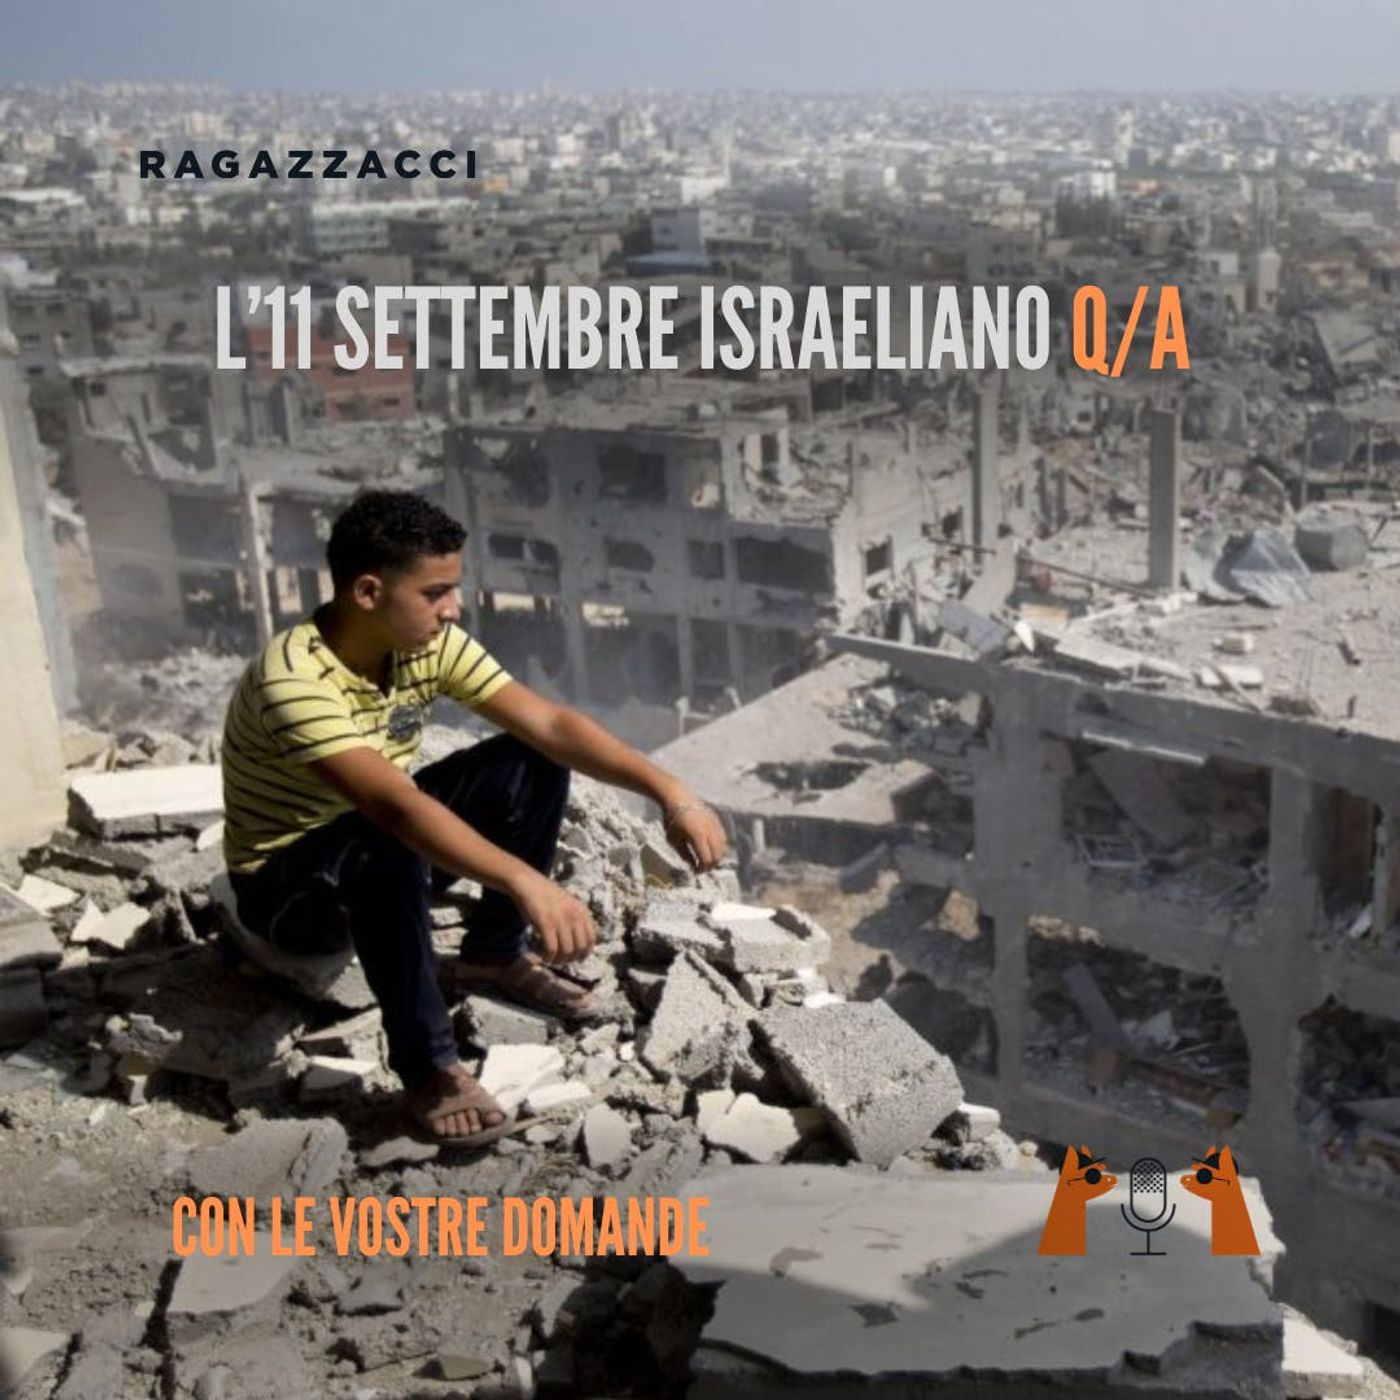 L'11 SETTEMBRE ISRAELIANO Q/A (con le vostre domande)